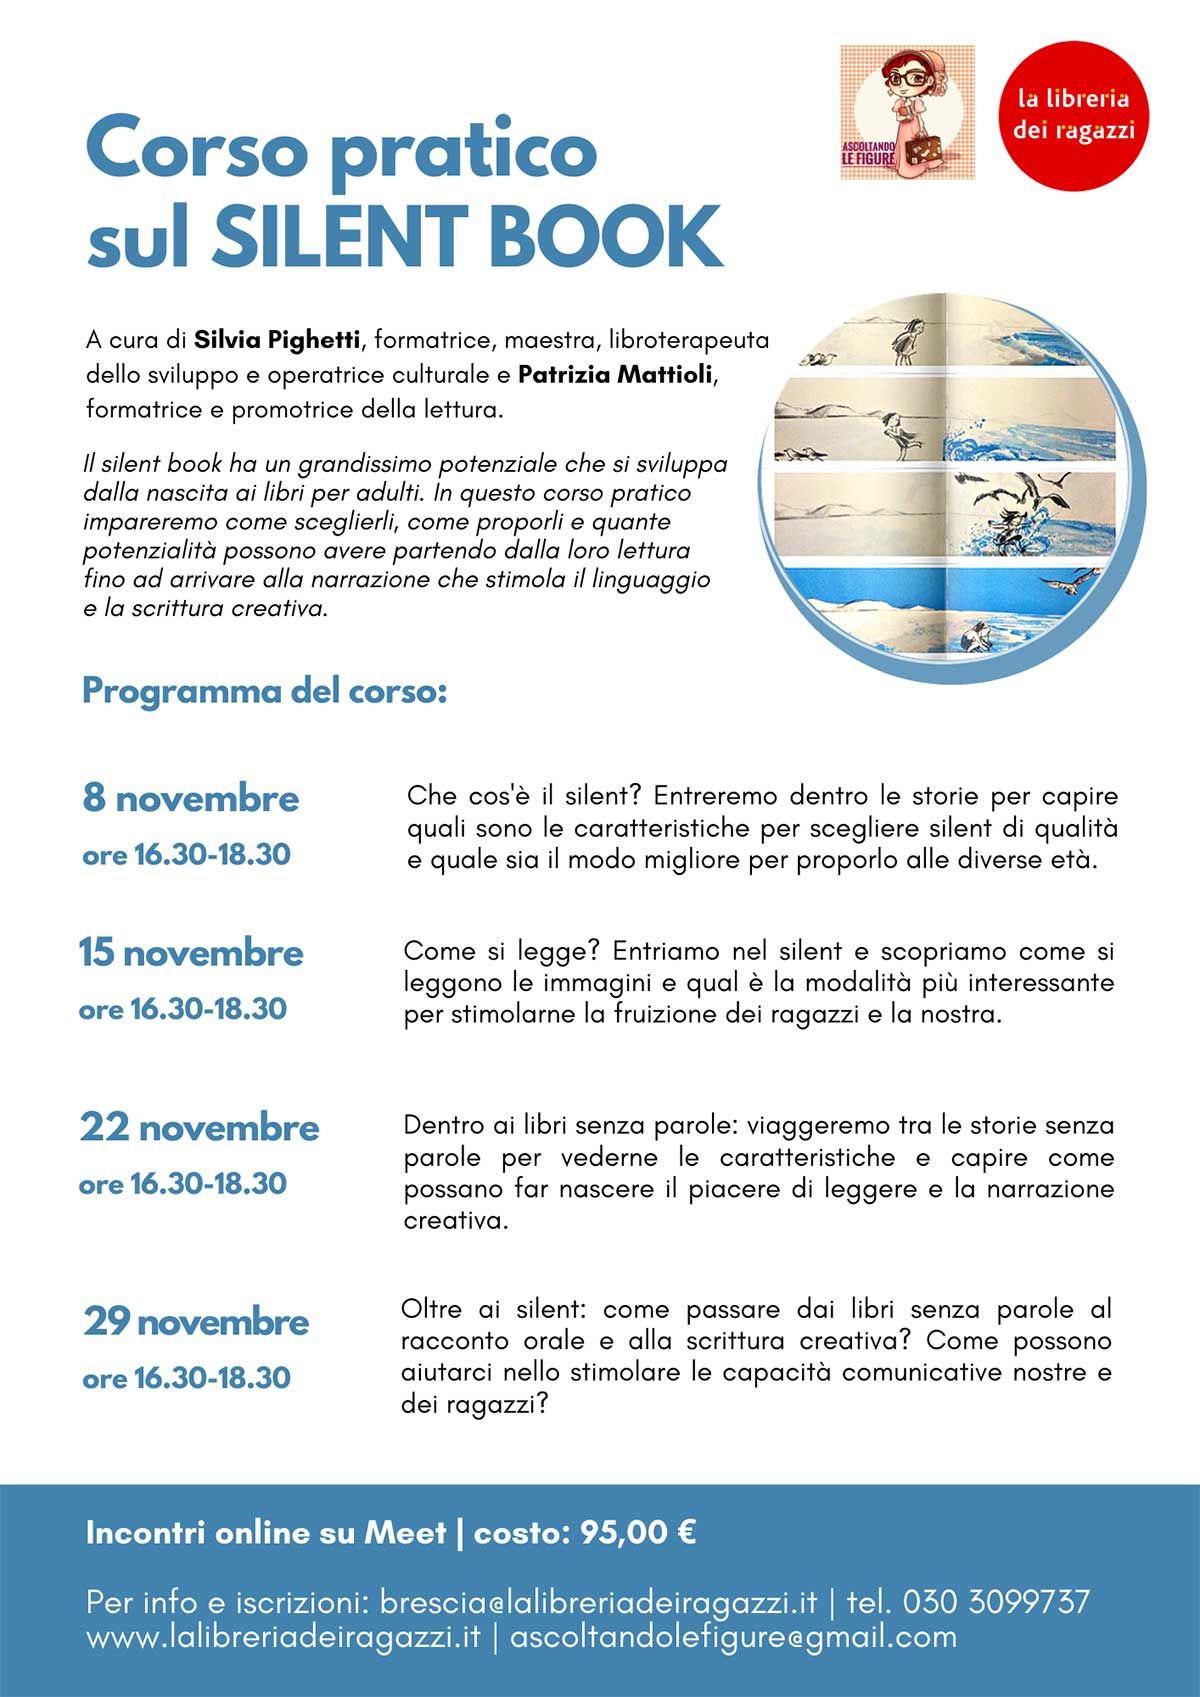 Corso pratico lettura silent book alla Librerai dei Ragazzi di Brescia